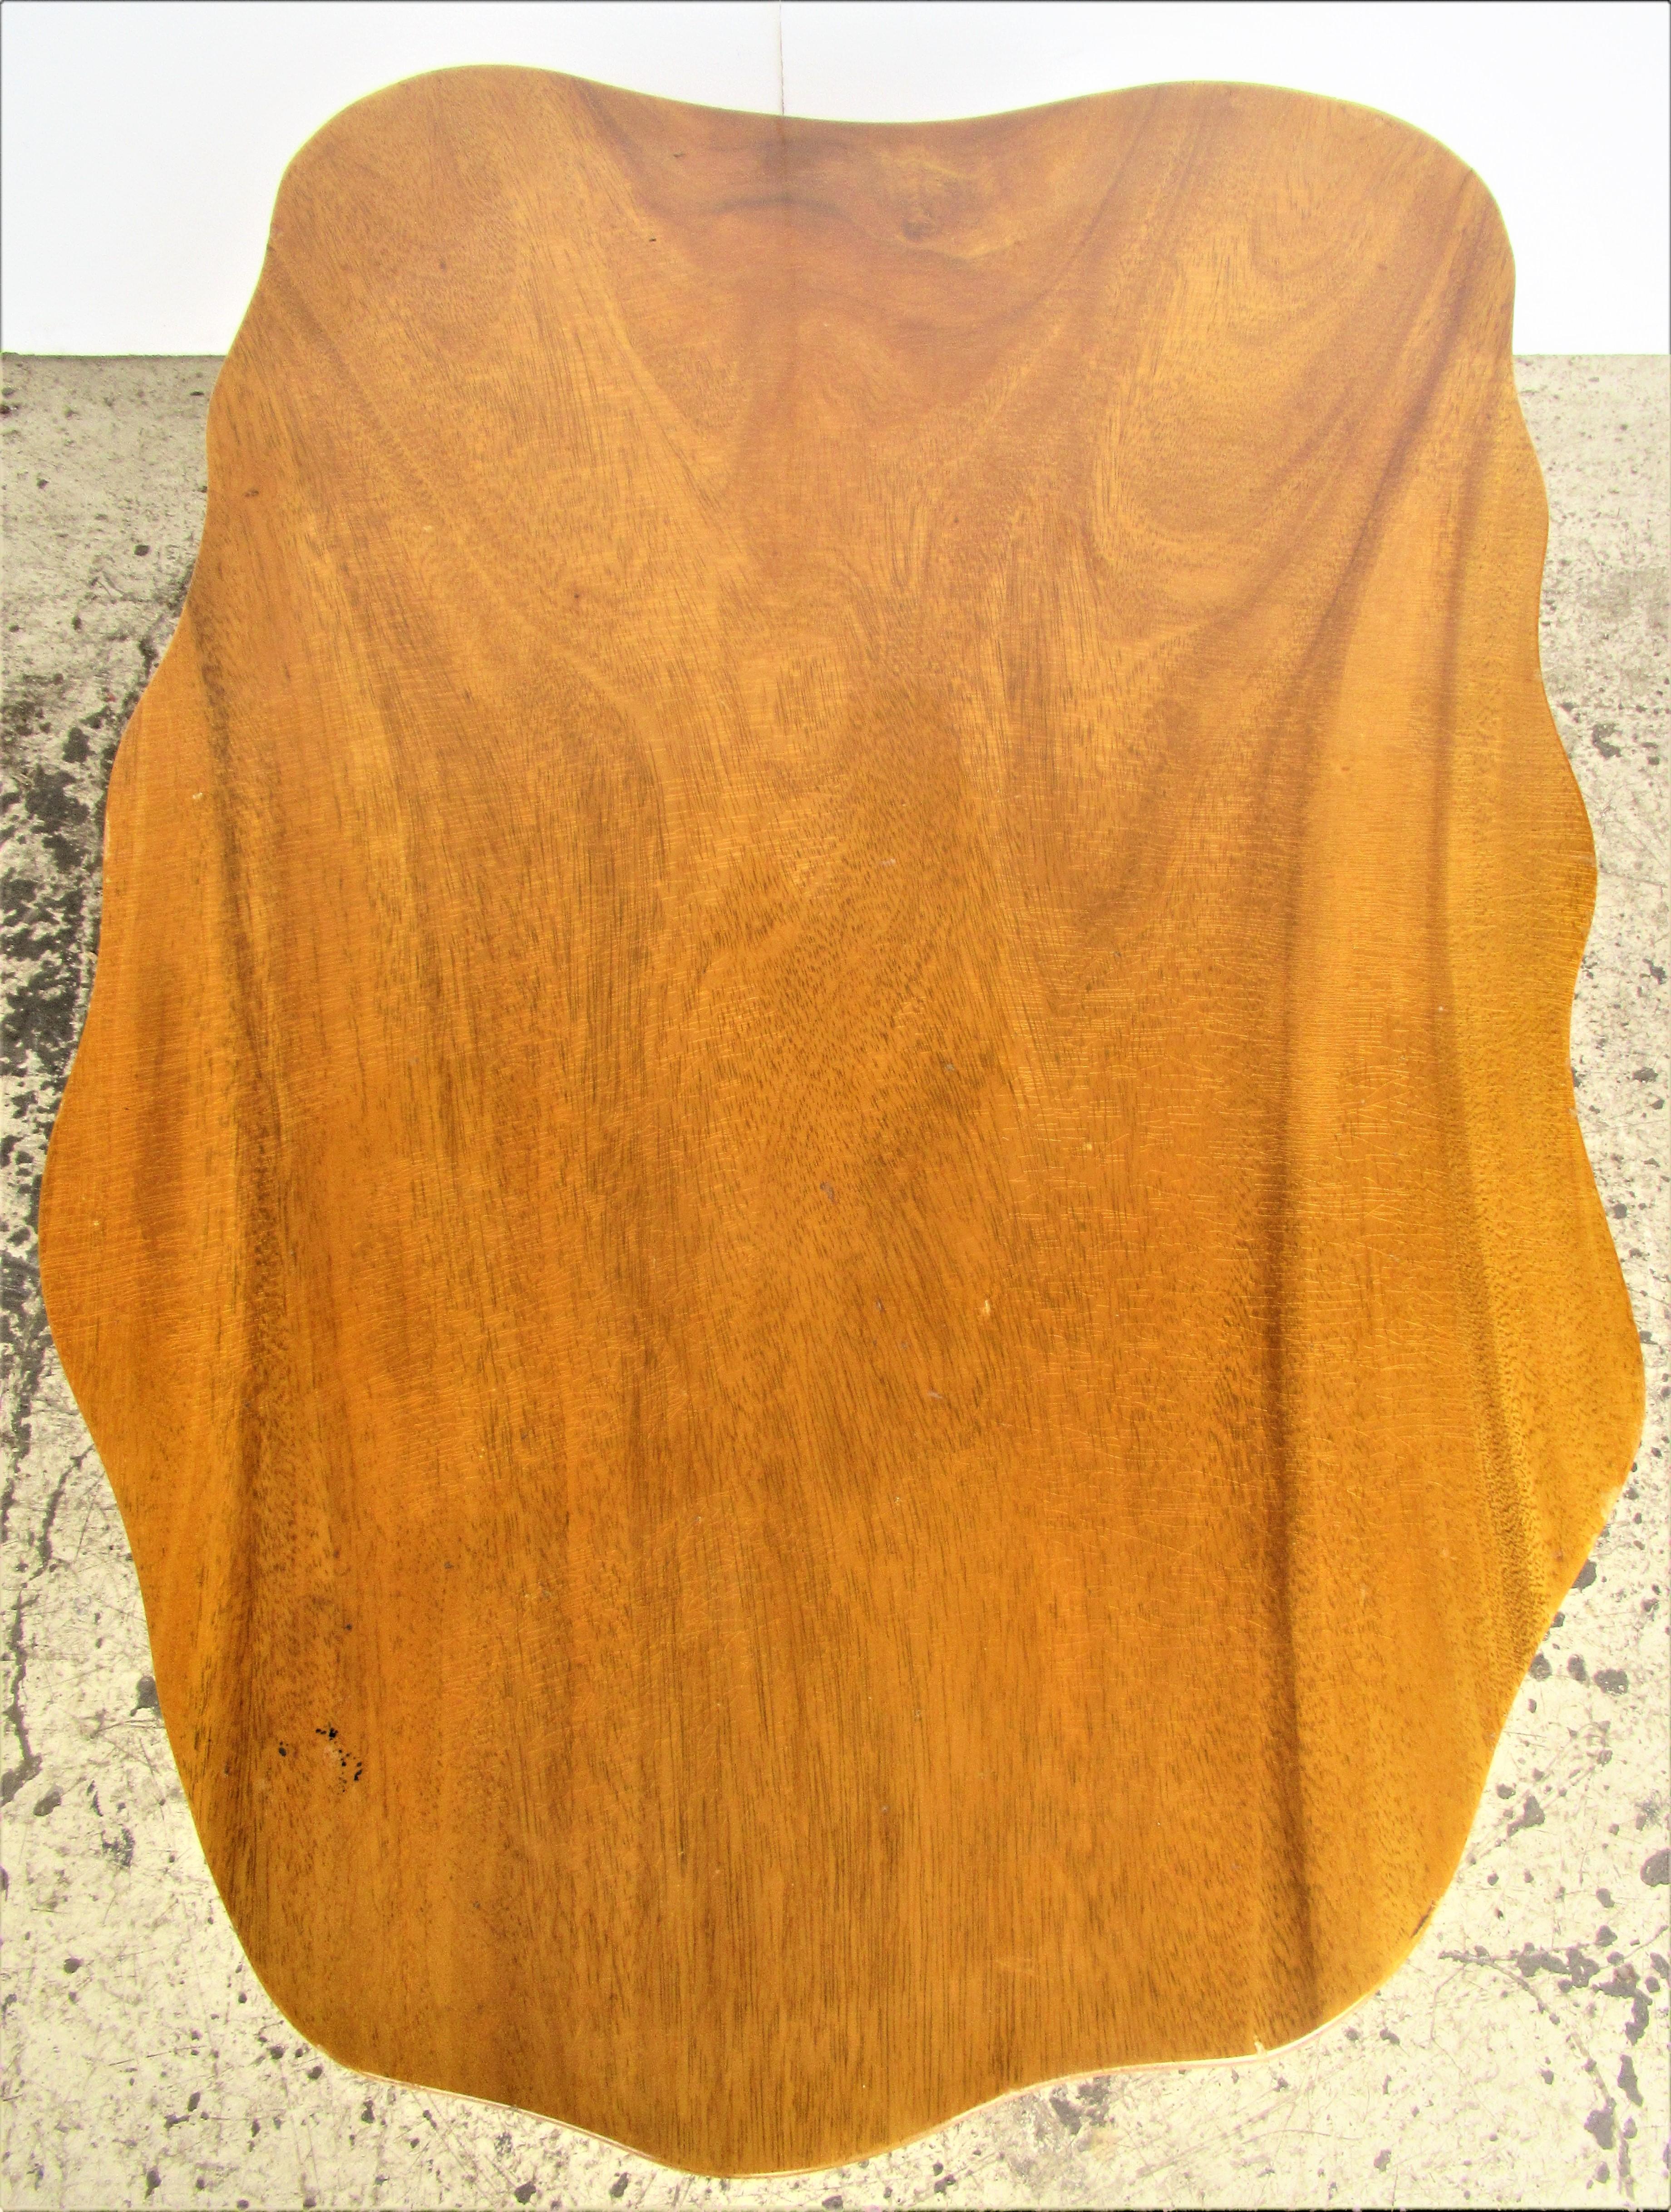  Organic Modern Hawaiian Monkey Pod Wood Table 2